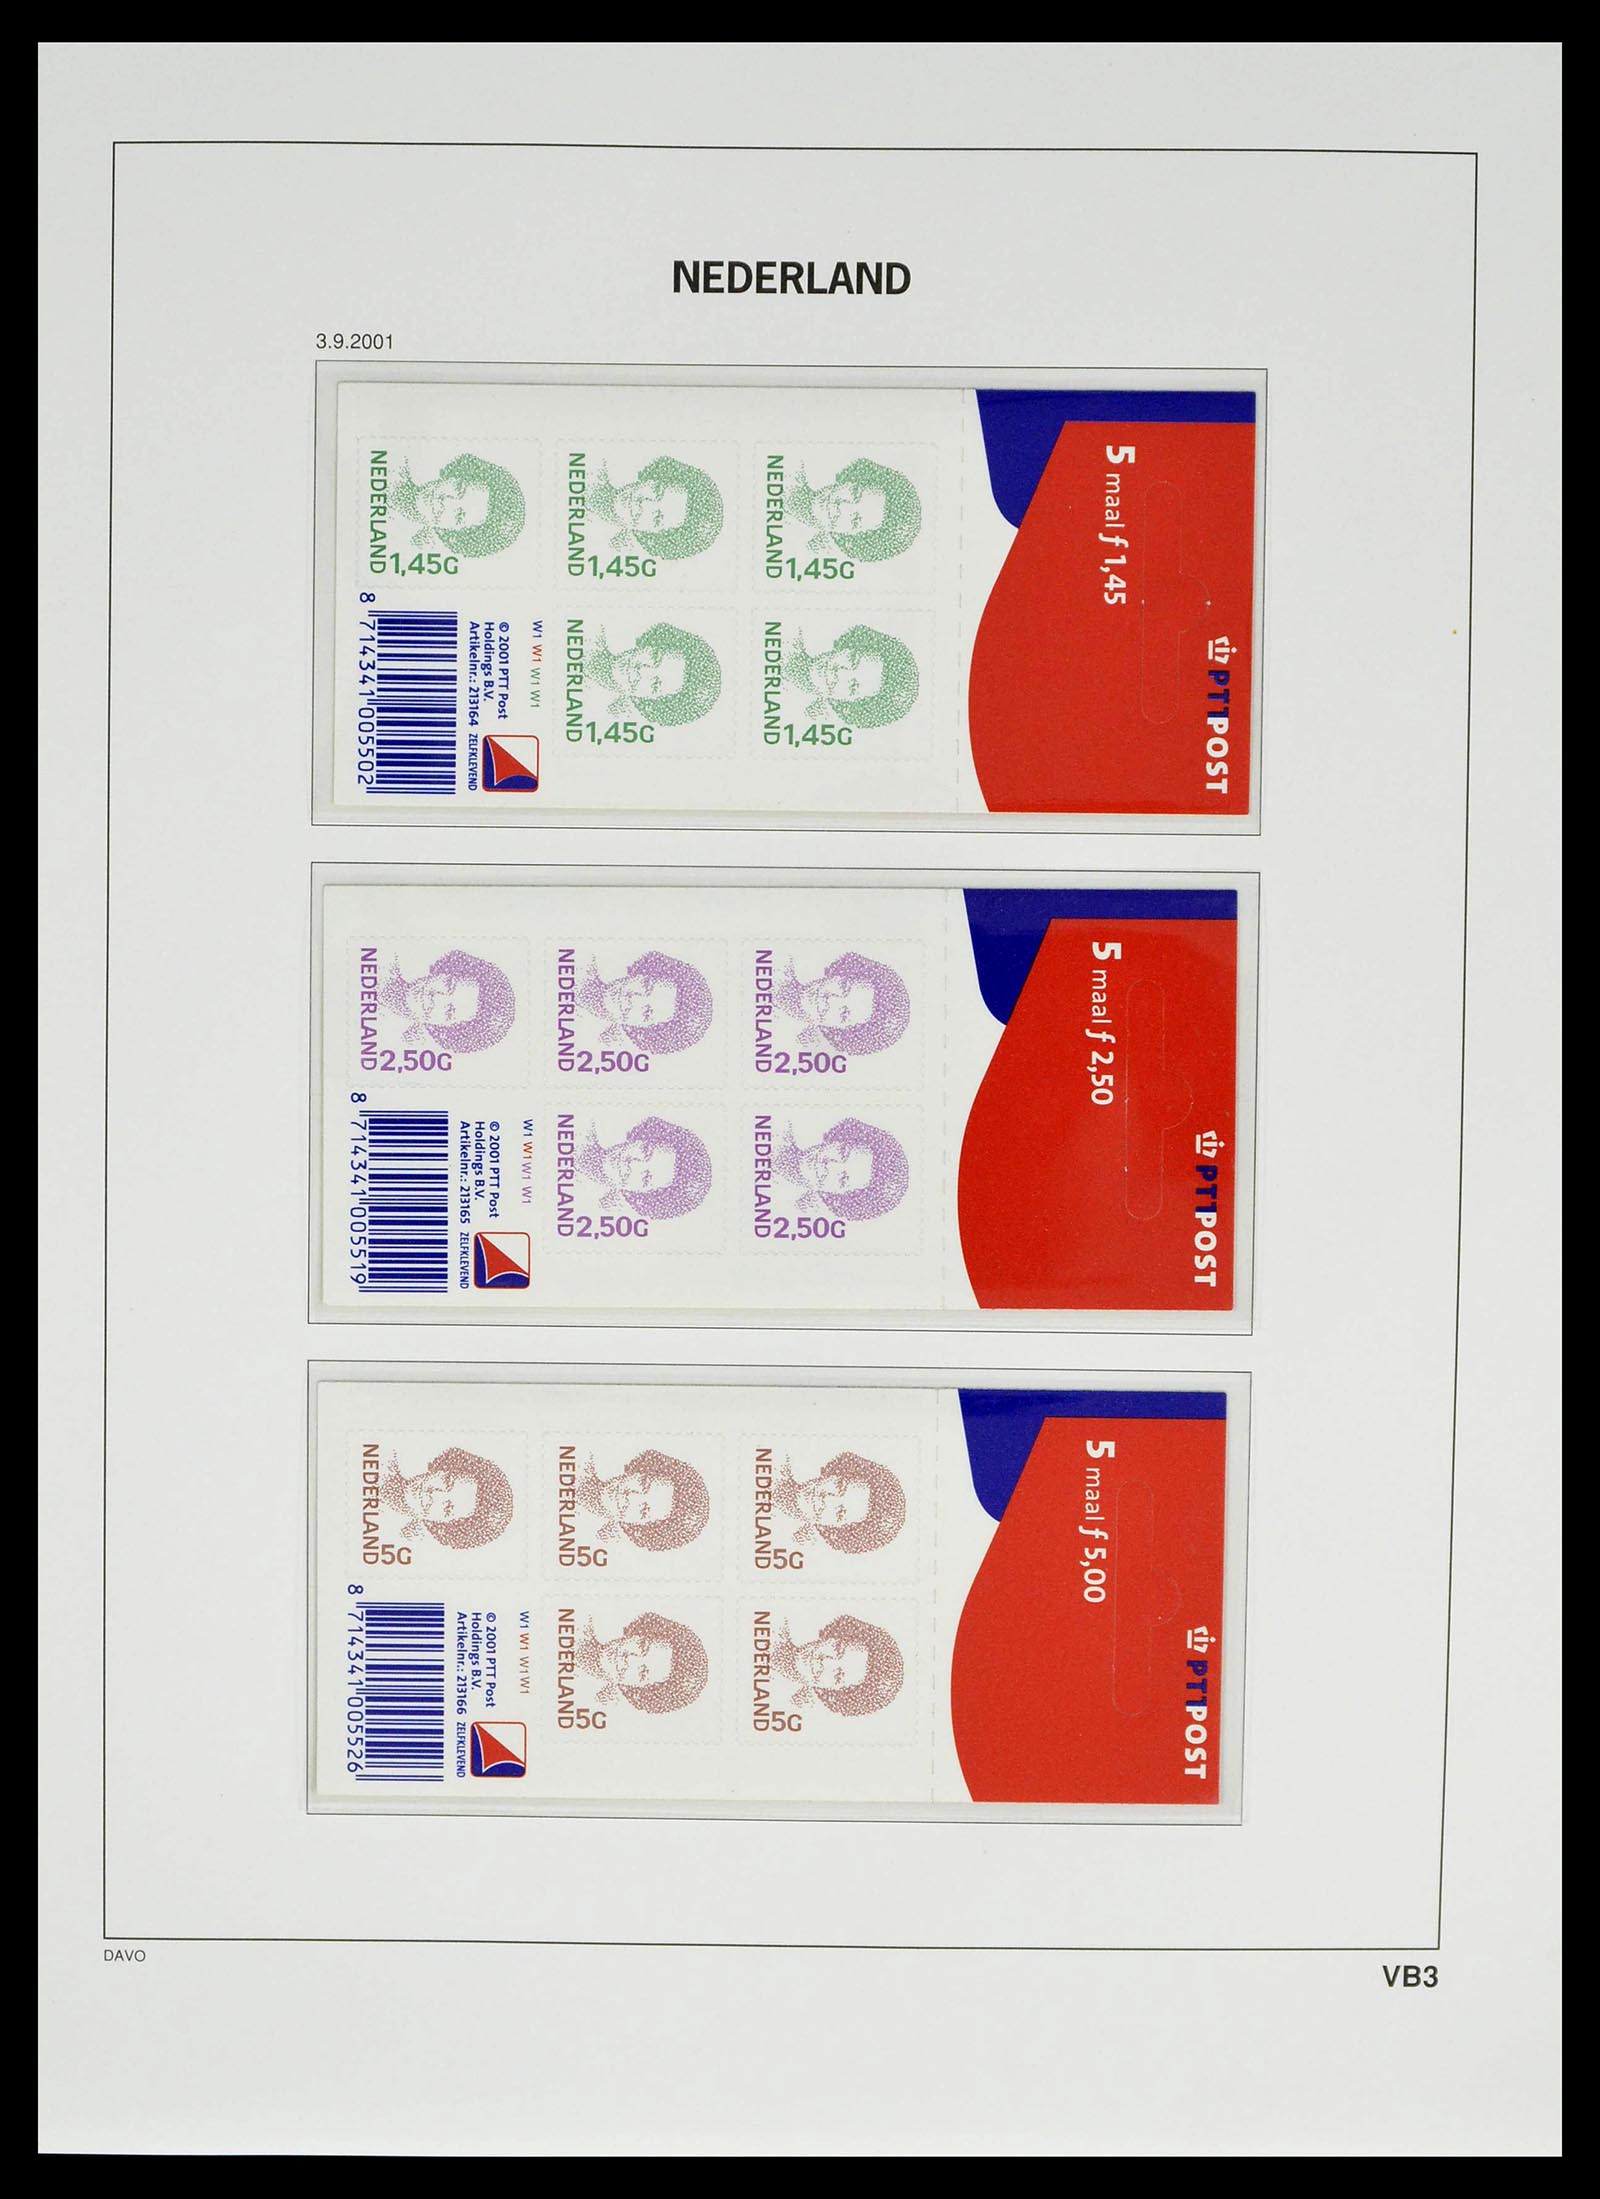 39134 0096 - Stamp collection 39134 Netherlands sheetlets 1992-2019!